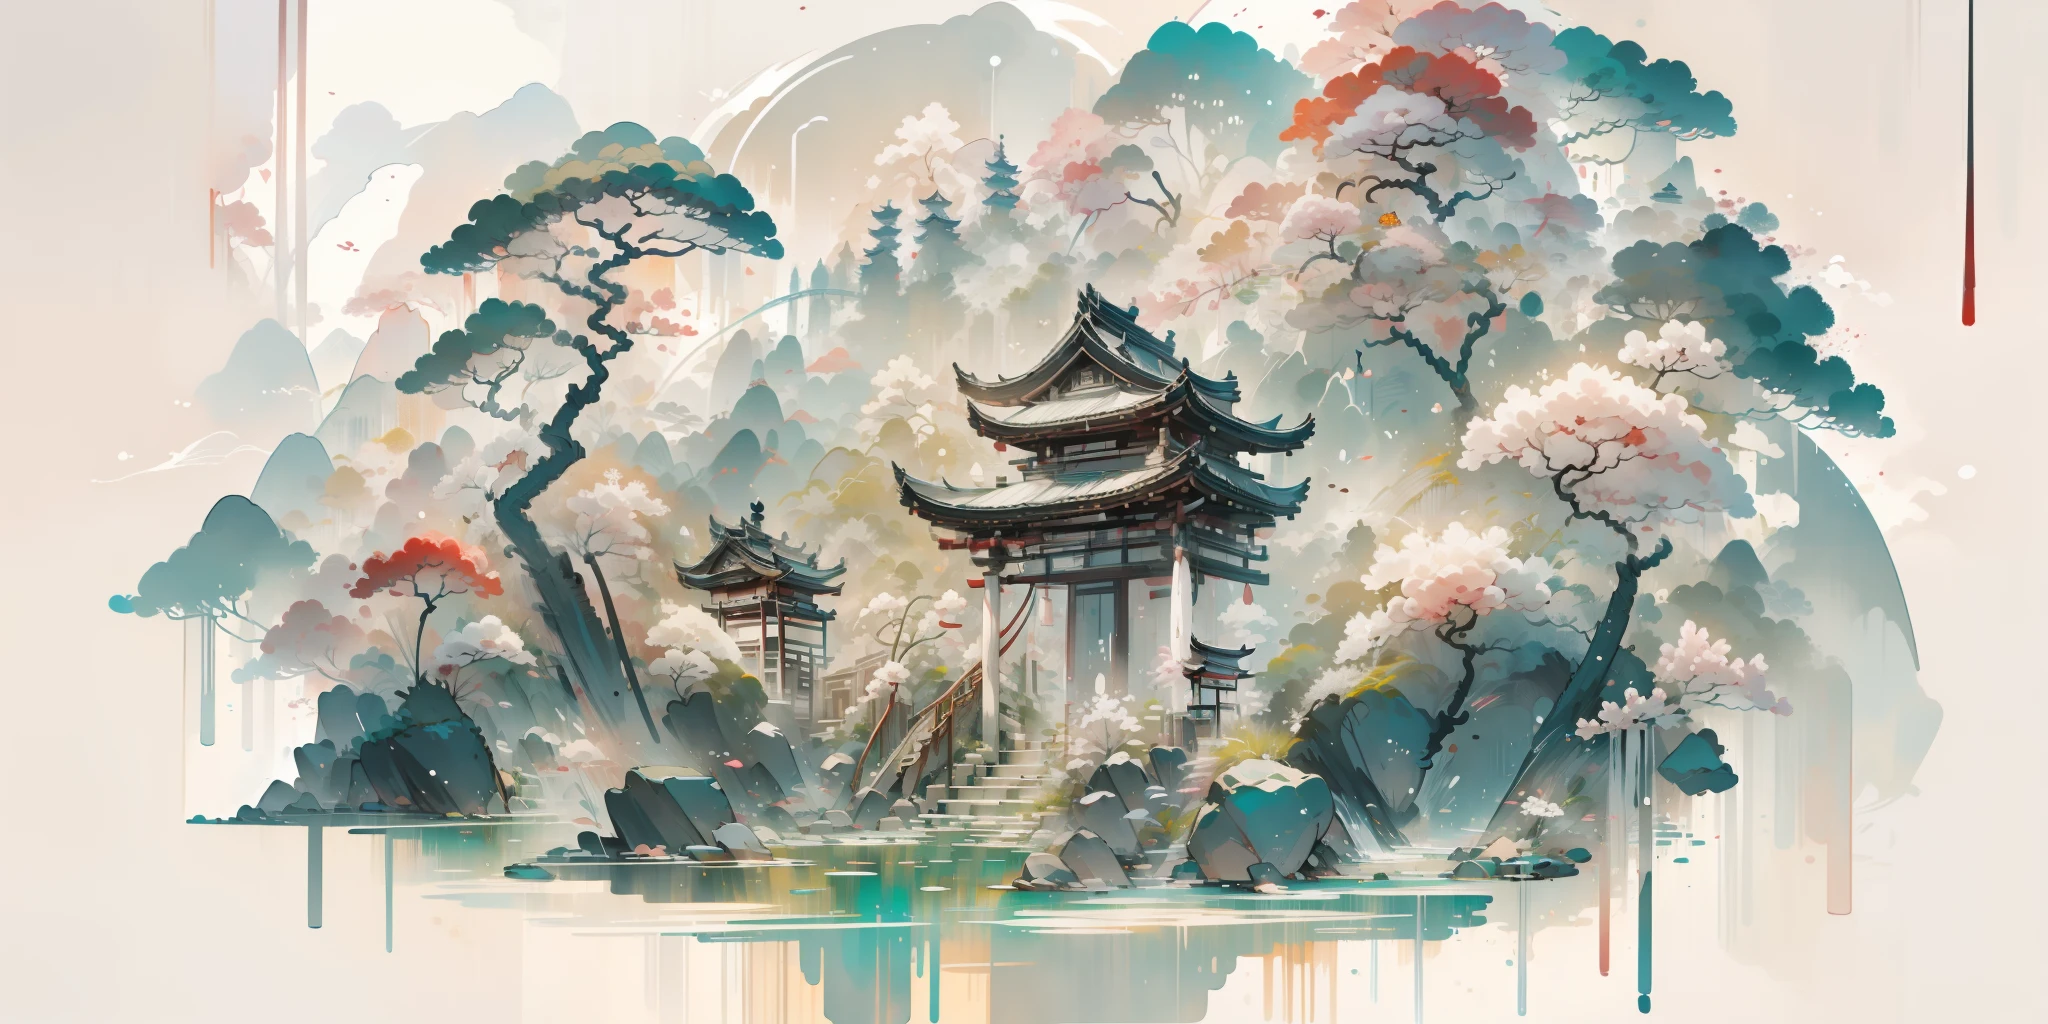 Un cuadro de paisaje oriental, ancient China, fondo blanco extremadamente puro, soñador, romantic, Anticuado, 3d, 8k, Destacar, detalles extremadamente finos, estilo wabi sabi,